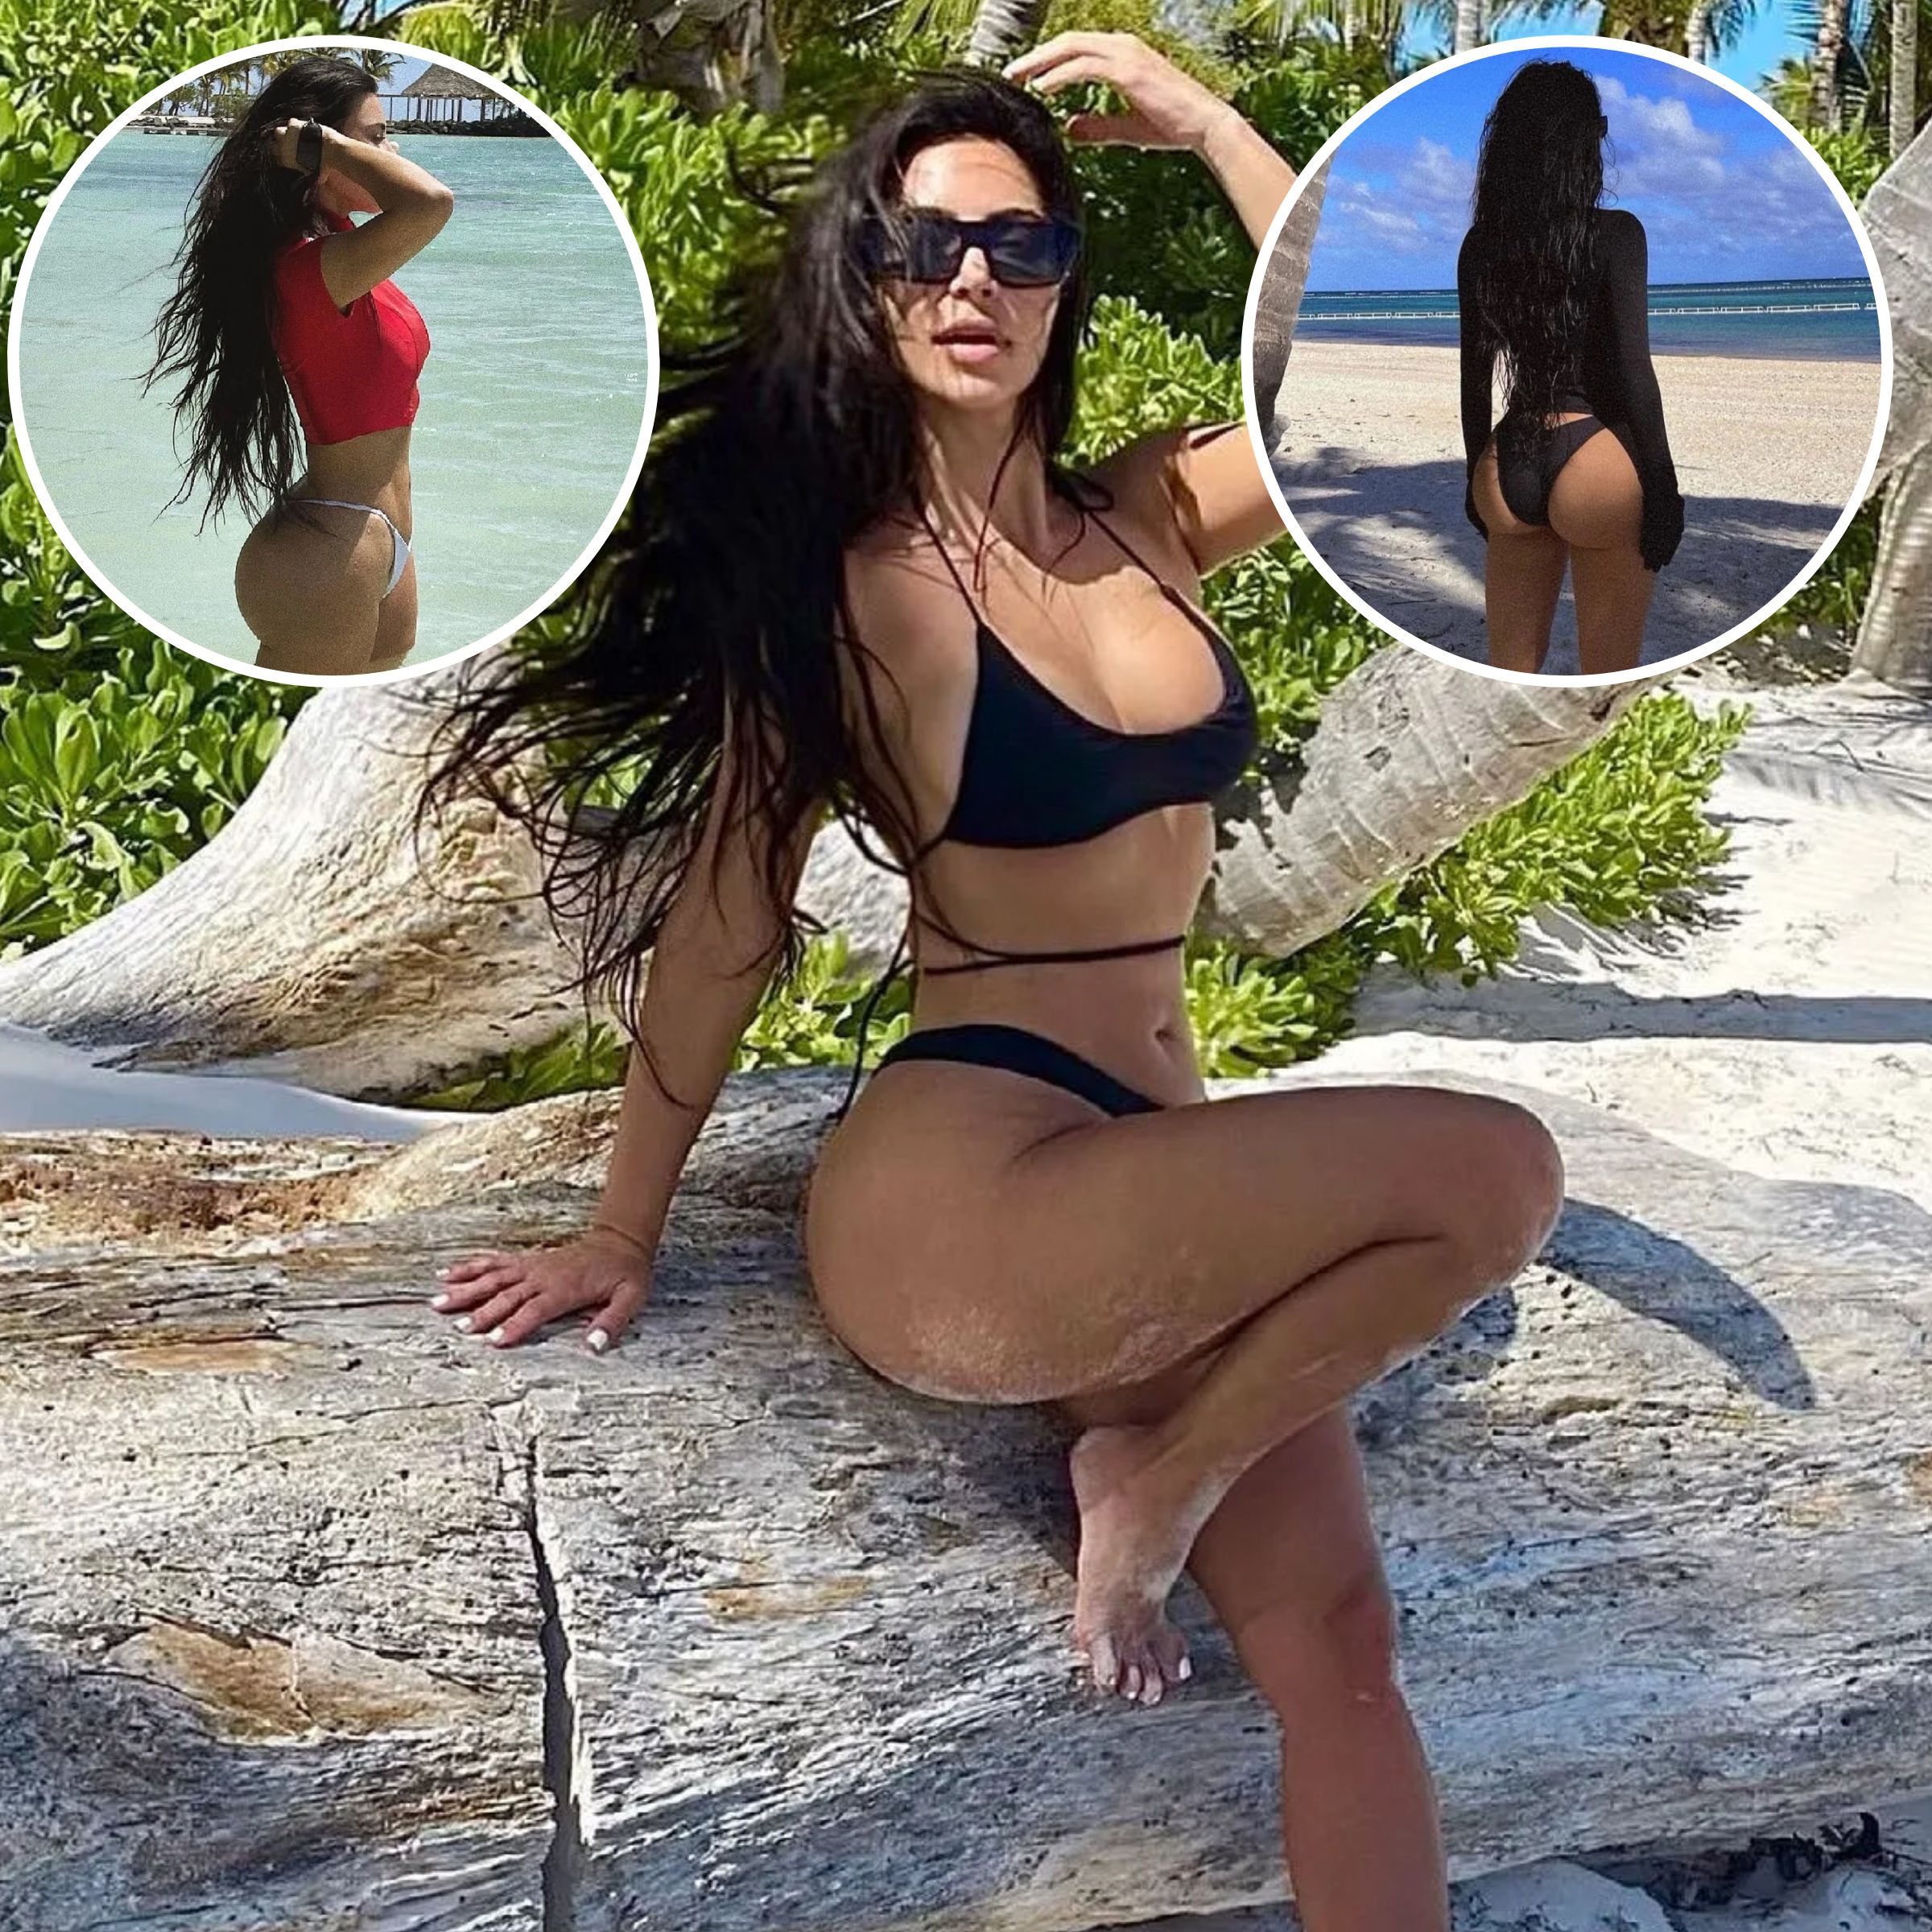 Kim Kardashian's Best Butt Photos: Pics Showing Off Her Assets